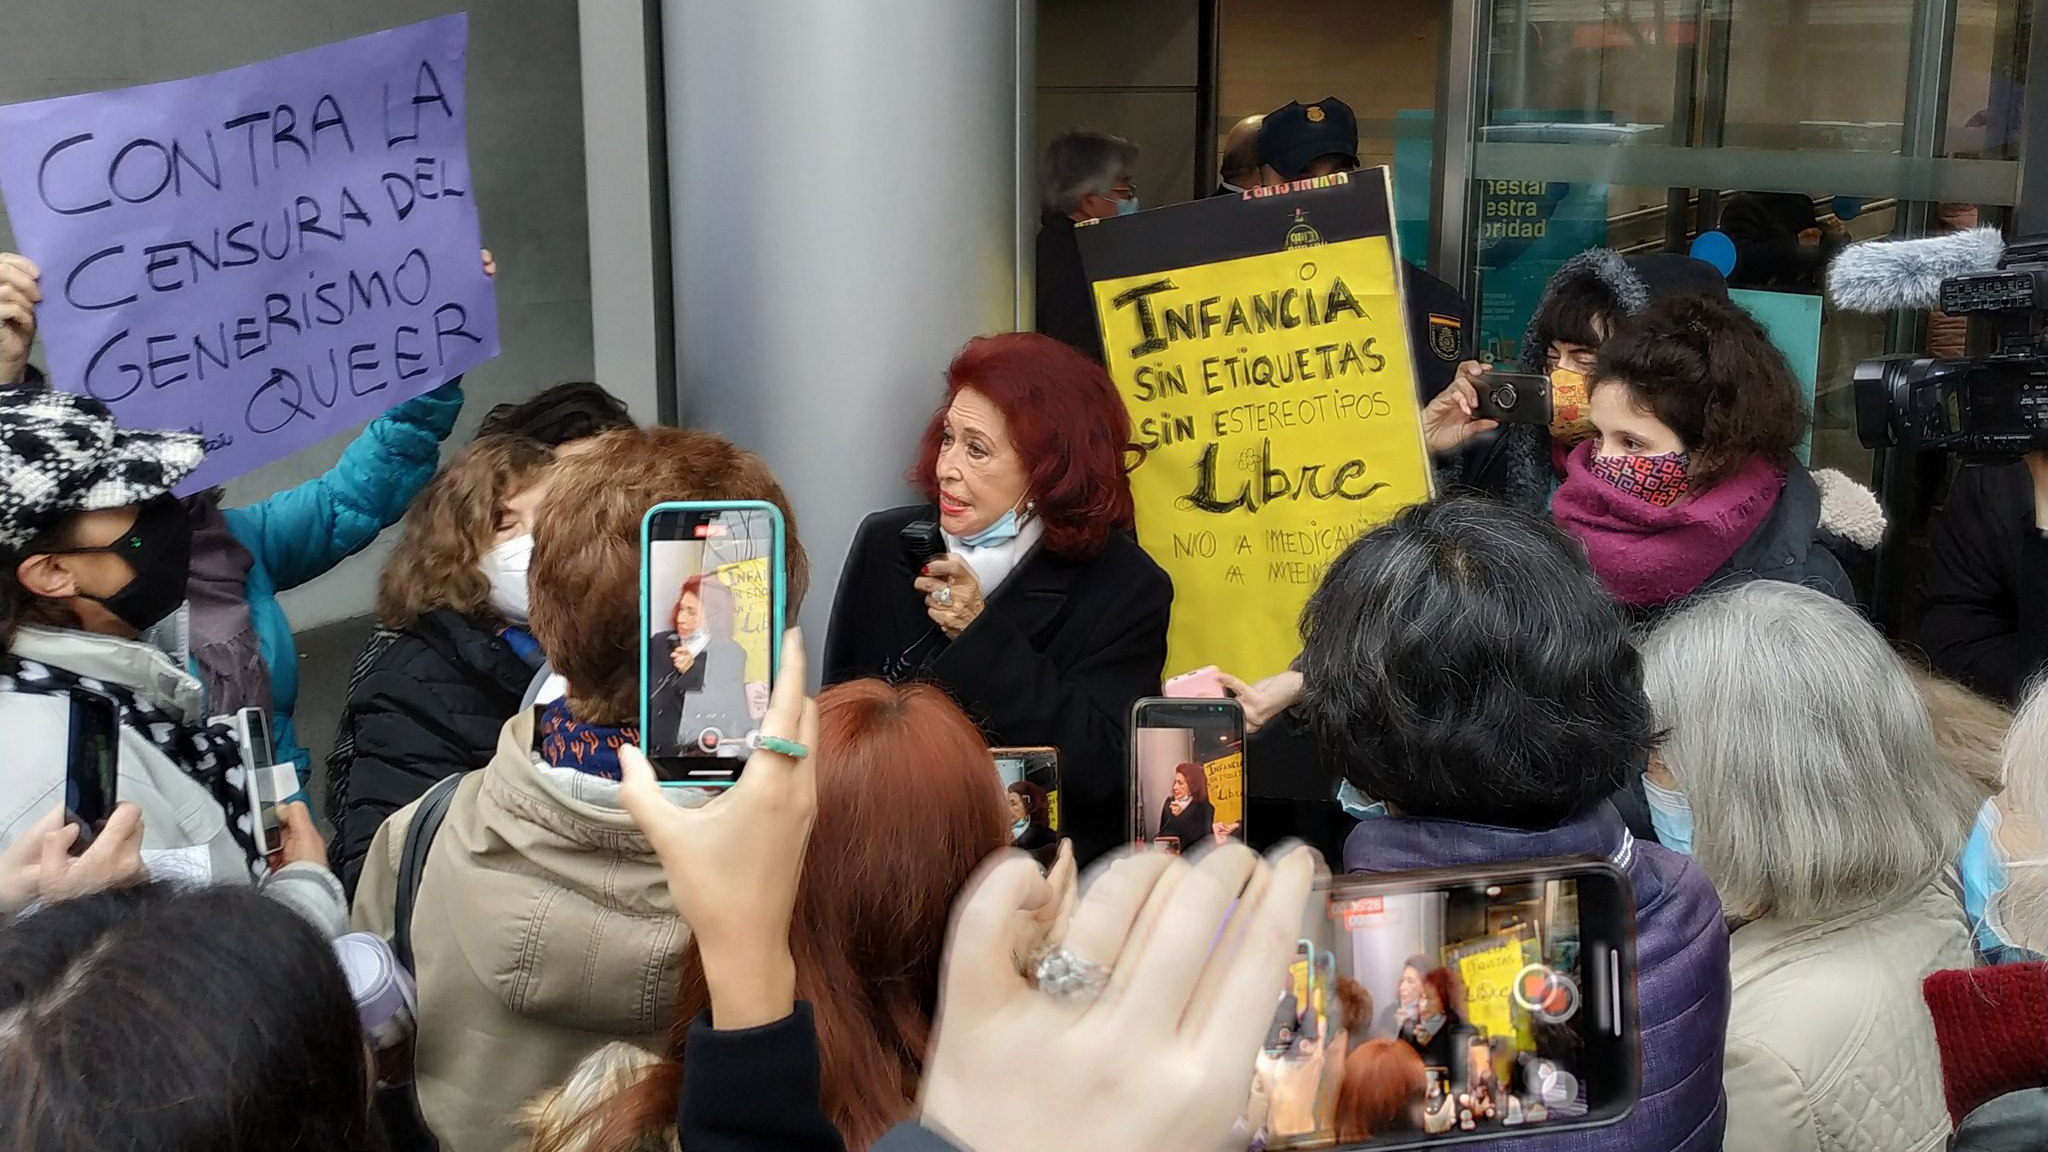 La militante antifranquista Lidia Falcón, frente a los tribunales españoles, enfrentando la denuncia de algunas extremistas feministas